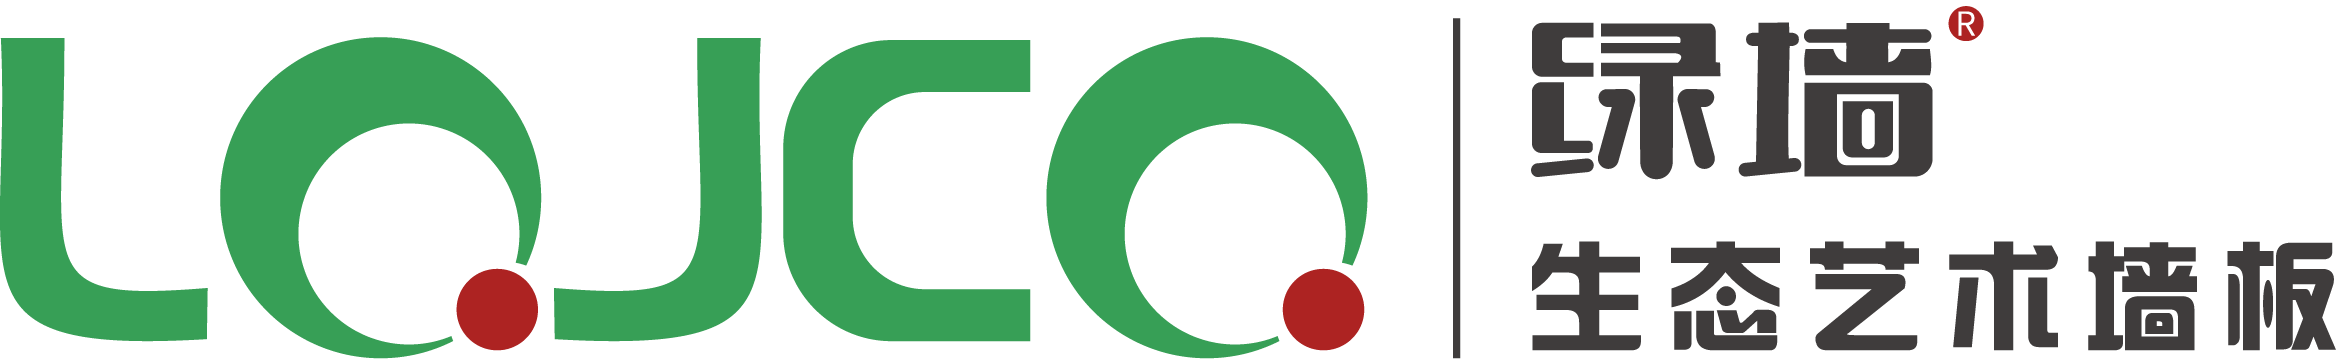 重慶綠墻裝飾建材有限公司 Logo